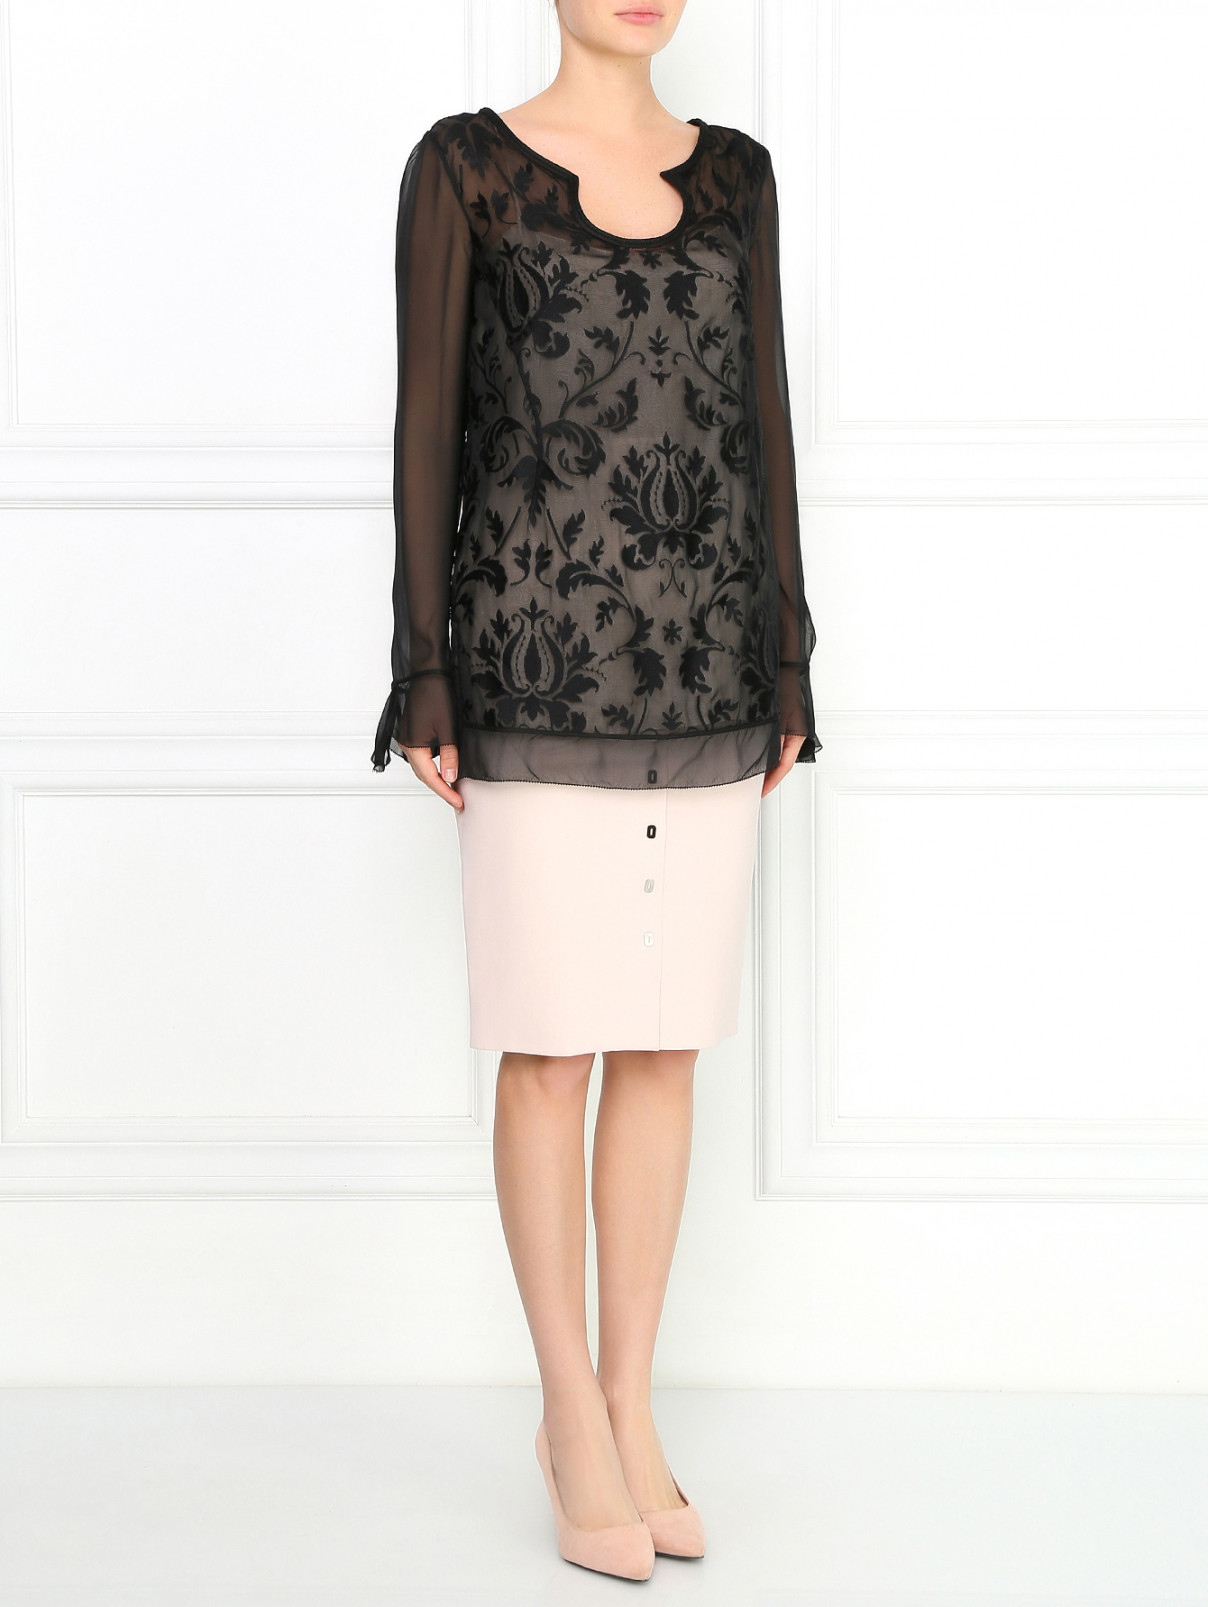 Шелковая блуза с вышивкой Alberta Ferretti  –  Модель Общий вид  – Цвет:  Черный